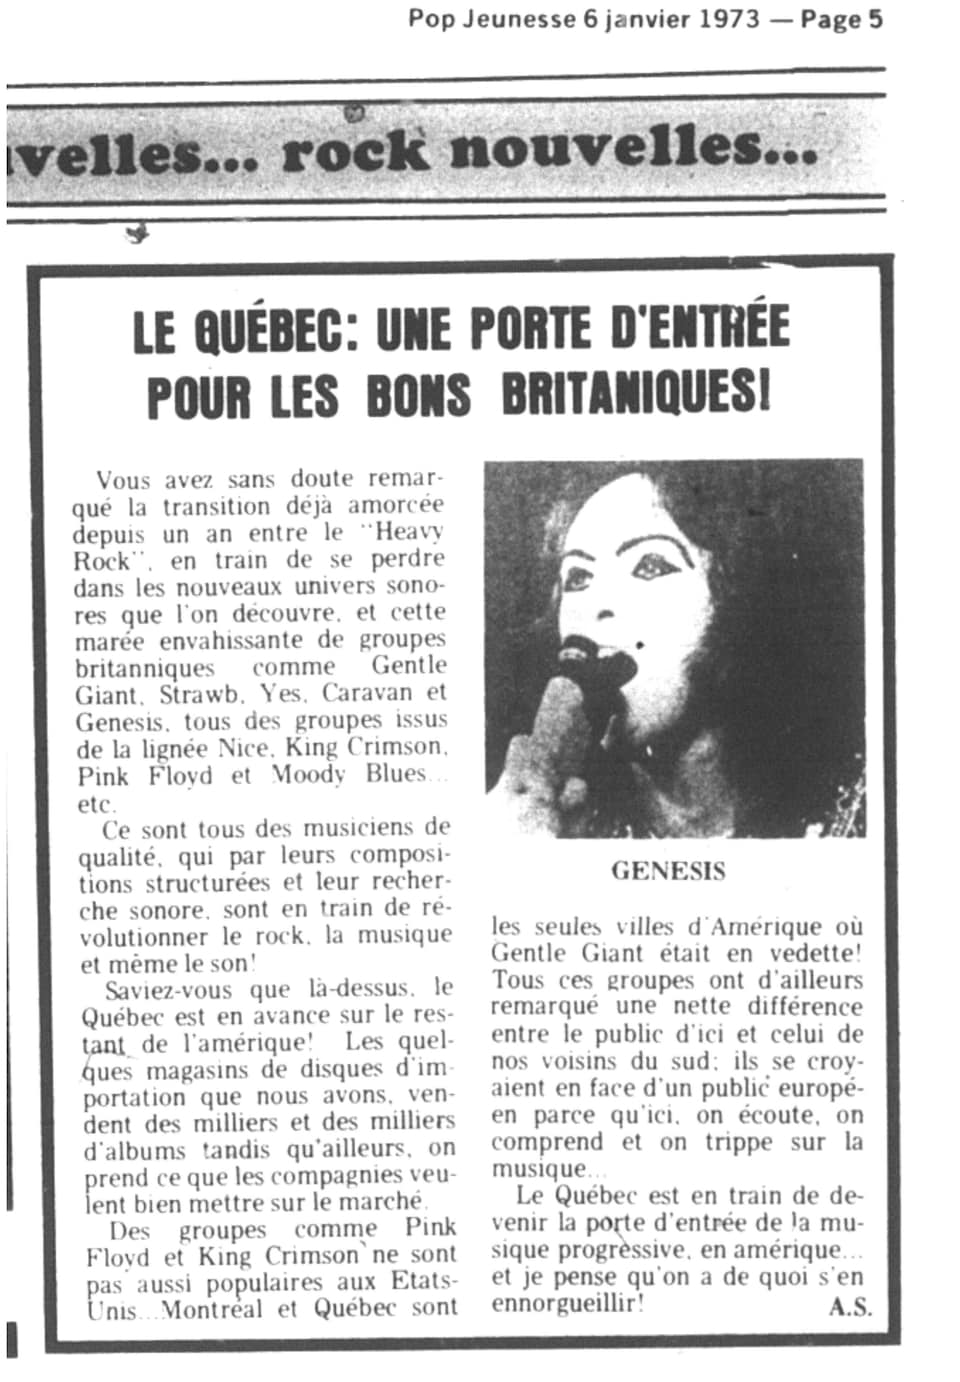 Un article du journal Pop Jeunesse de 1973 portant sur la vague  de nouveaux groupes britanniques.